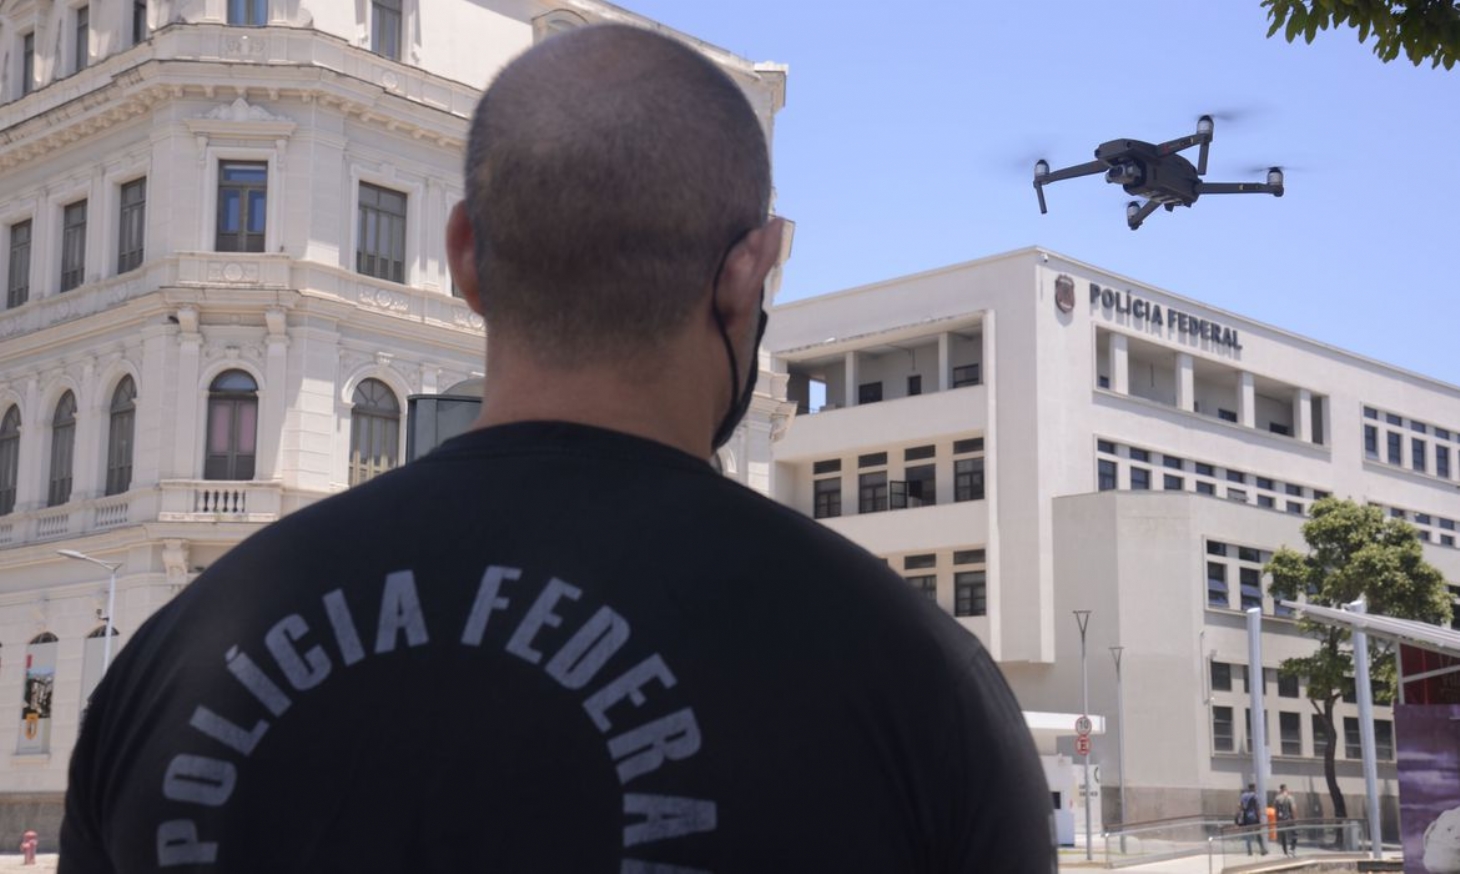 Polícia Federal usará drones para combater fraudes em eleições | Jornal da Orla